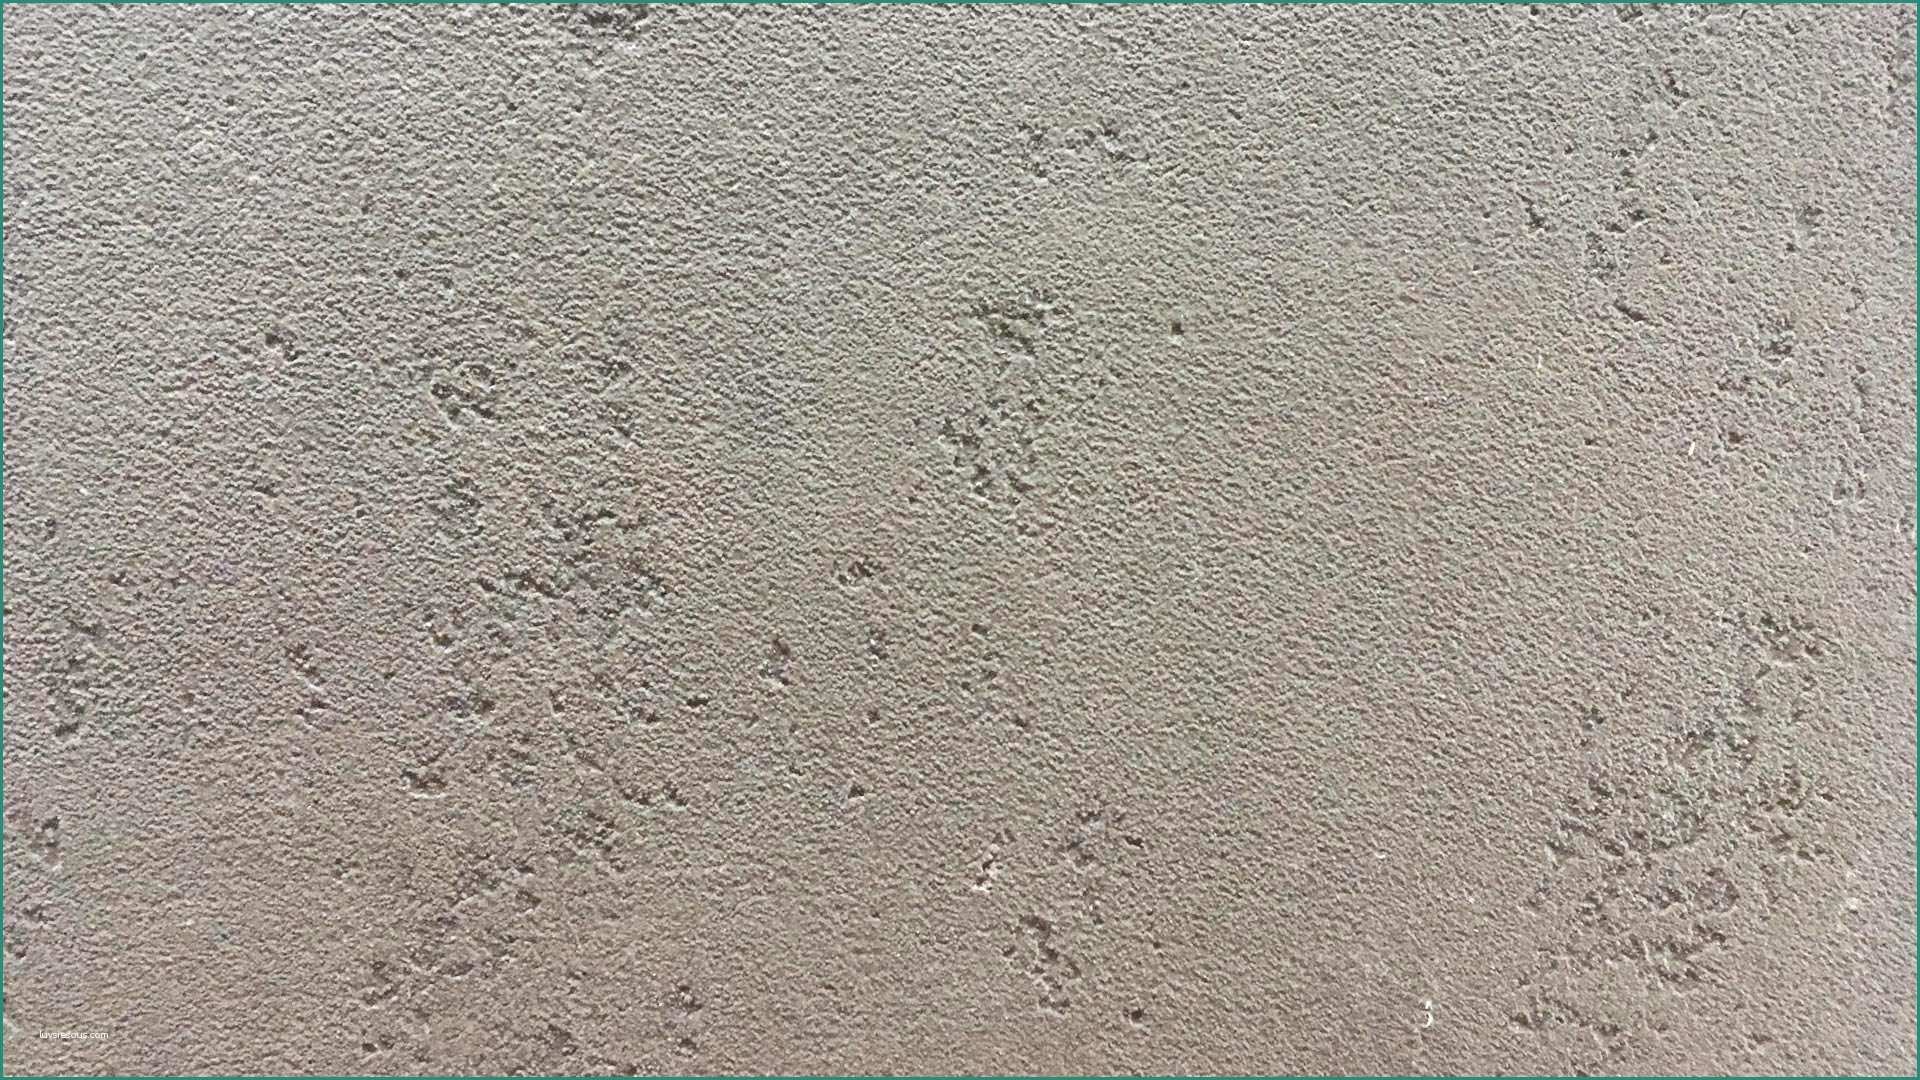 Cemento Colorato Prezzi E Cemento Lisciato Interesting Pavimenti In Cemento Zona Giorno with